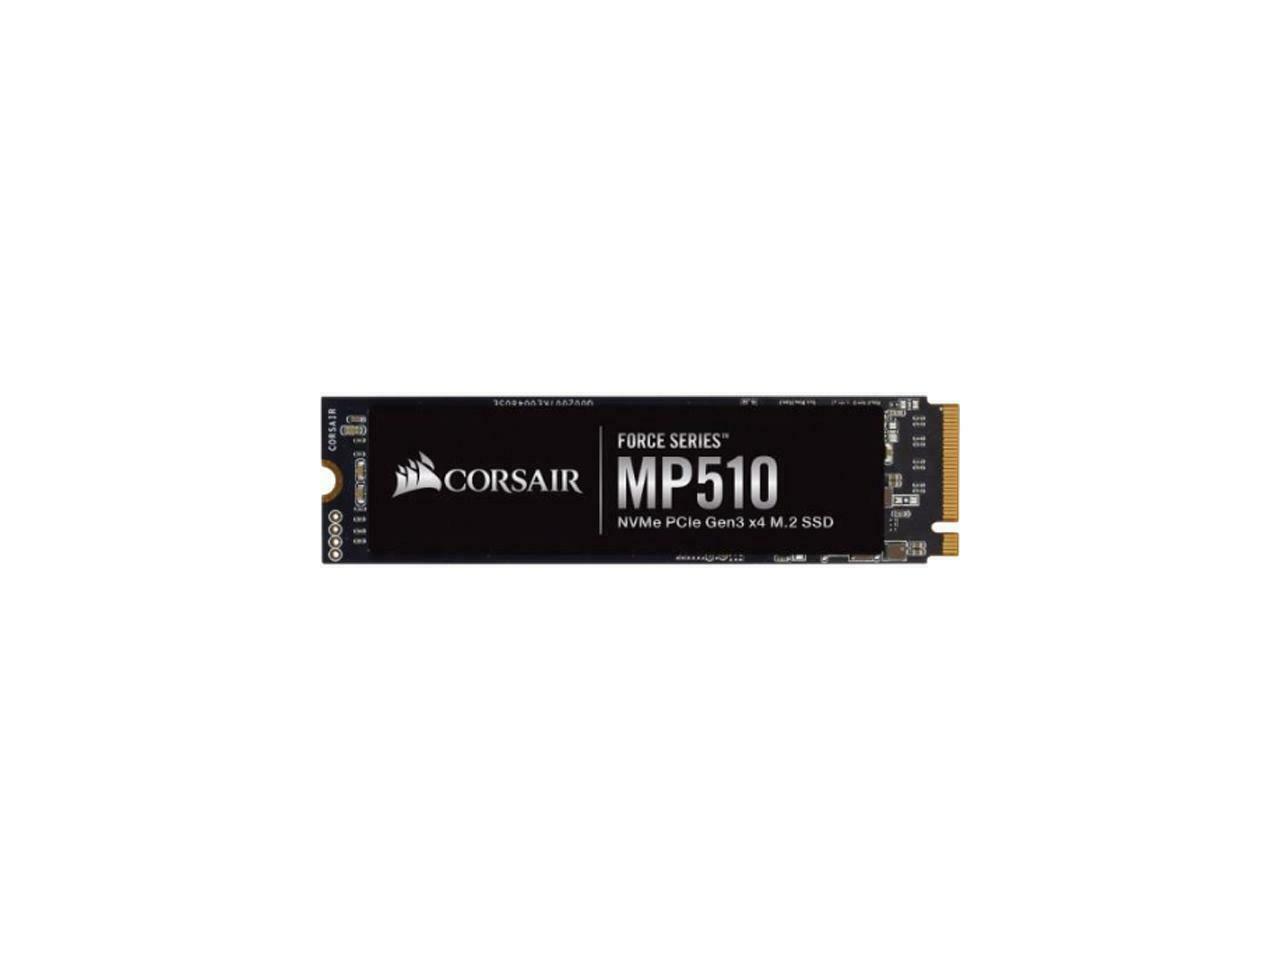 SSD CORSAIR FORCE SERIES MP510 960GB M.2 NVME